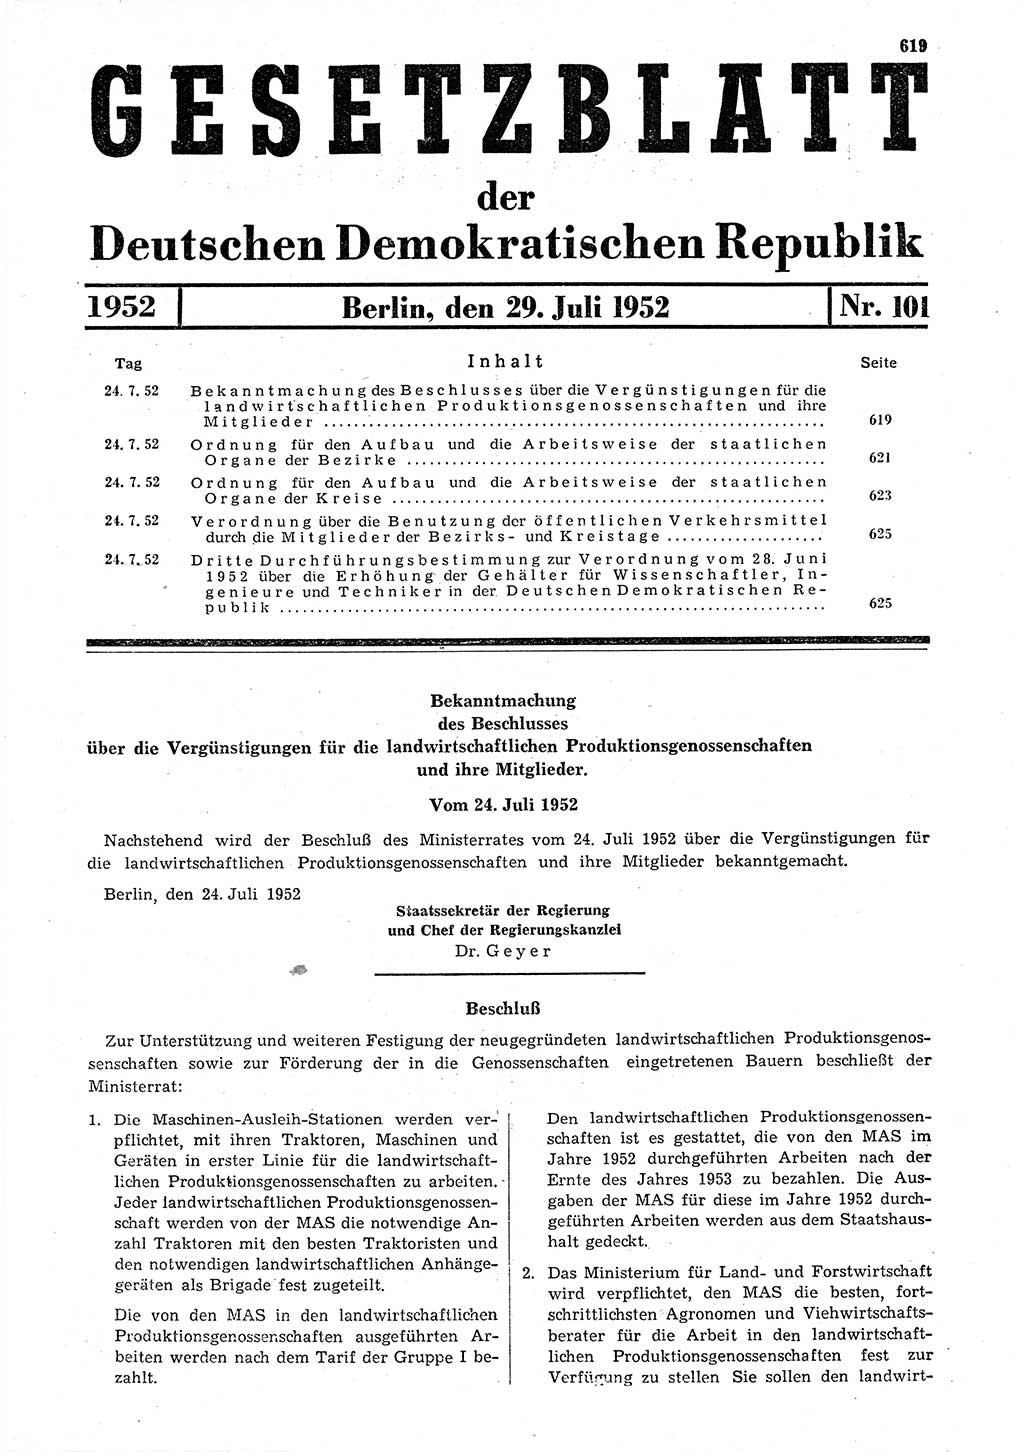 Gesetzblatt (GBl.) der Deutschen Demokratischen Republik (DDR) 1952, Seite 619 (GBl. DDR 1952, S. 619)